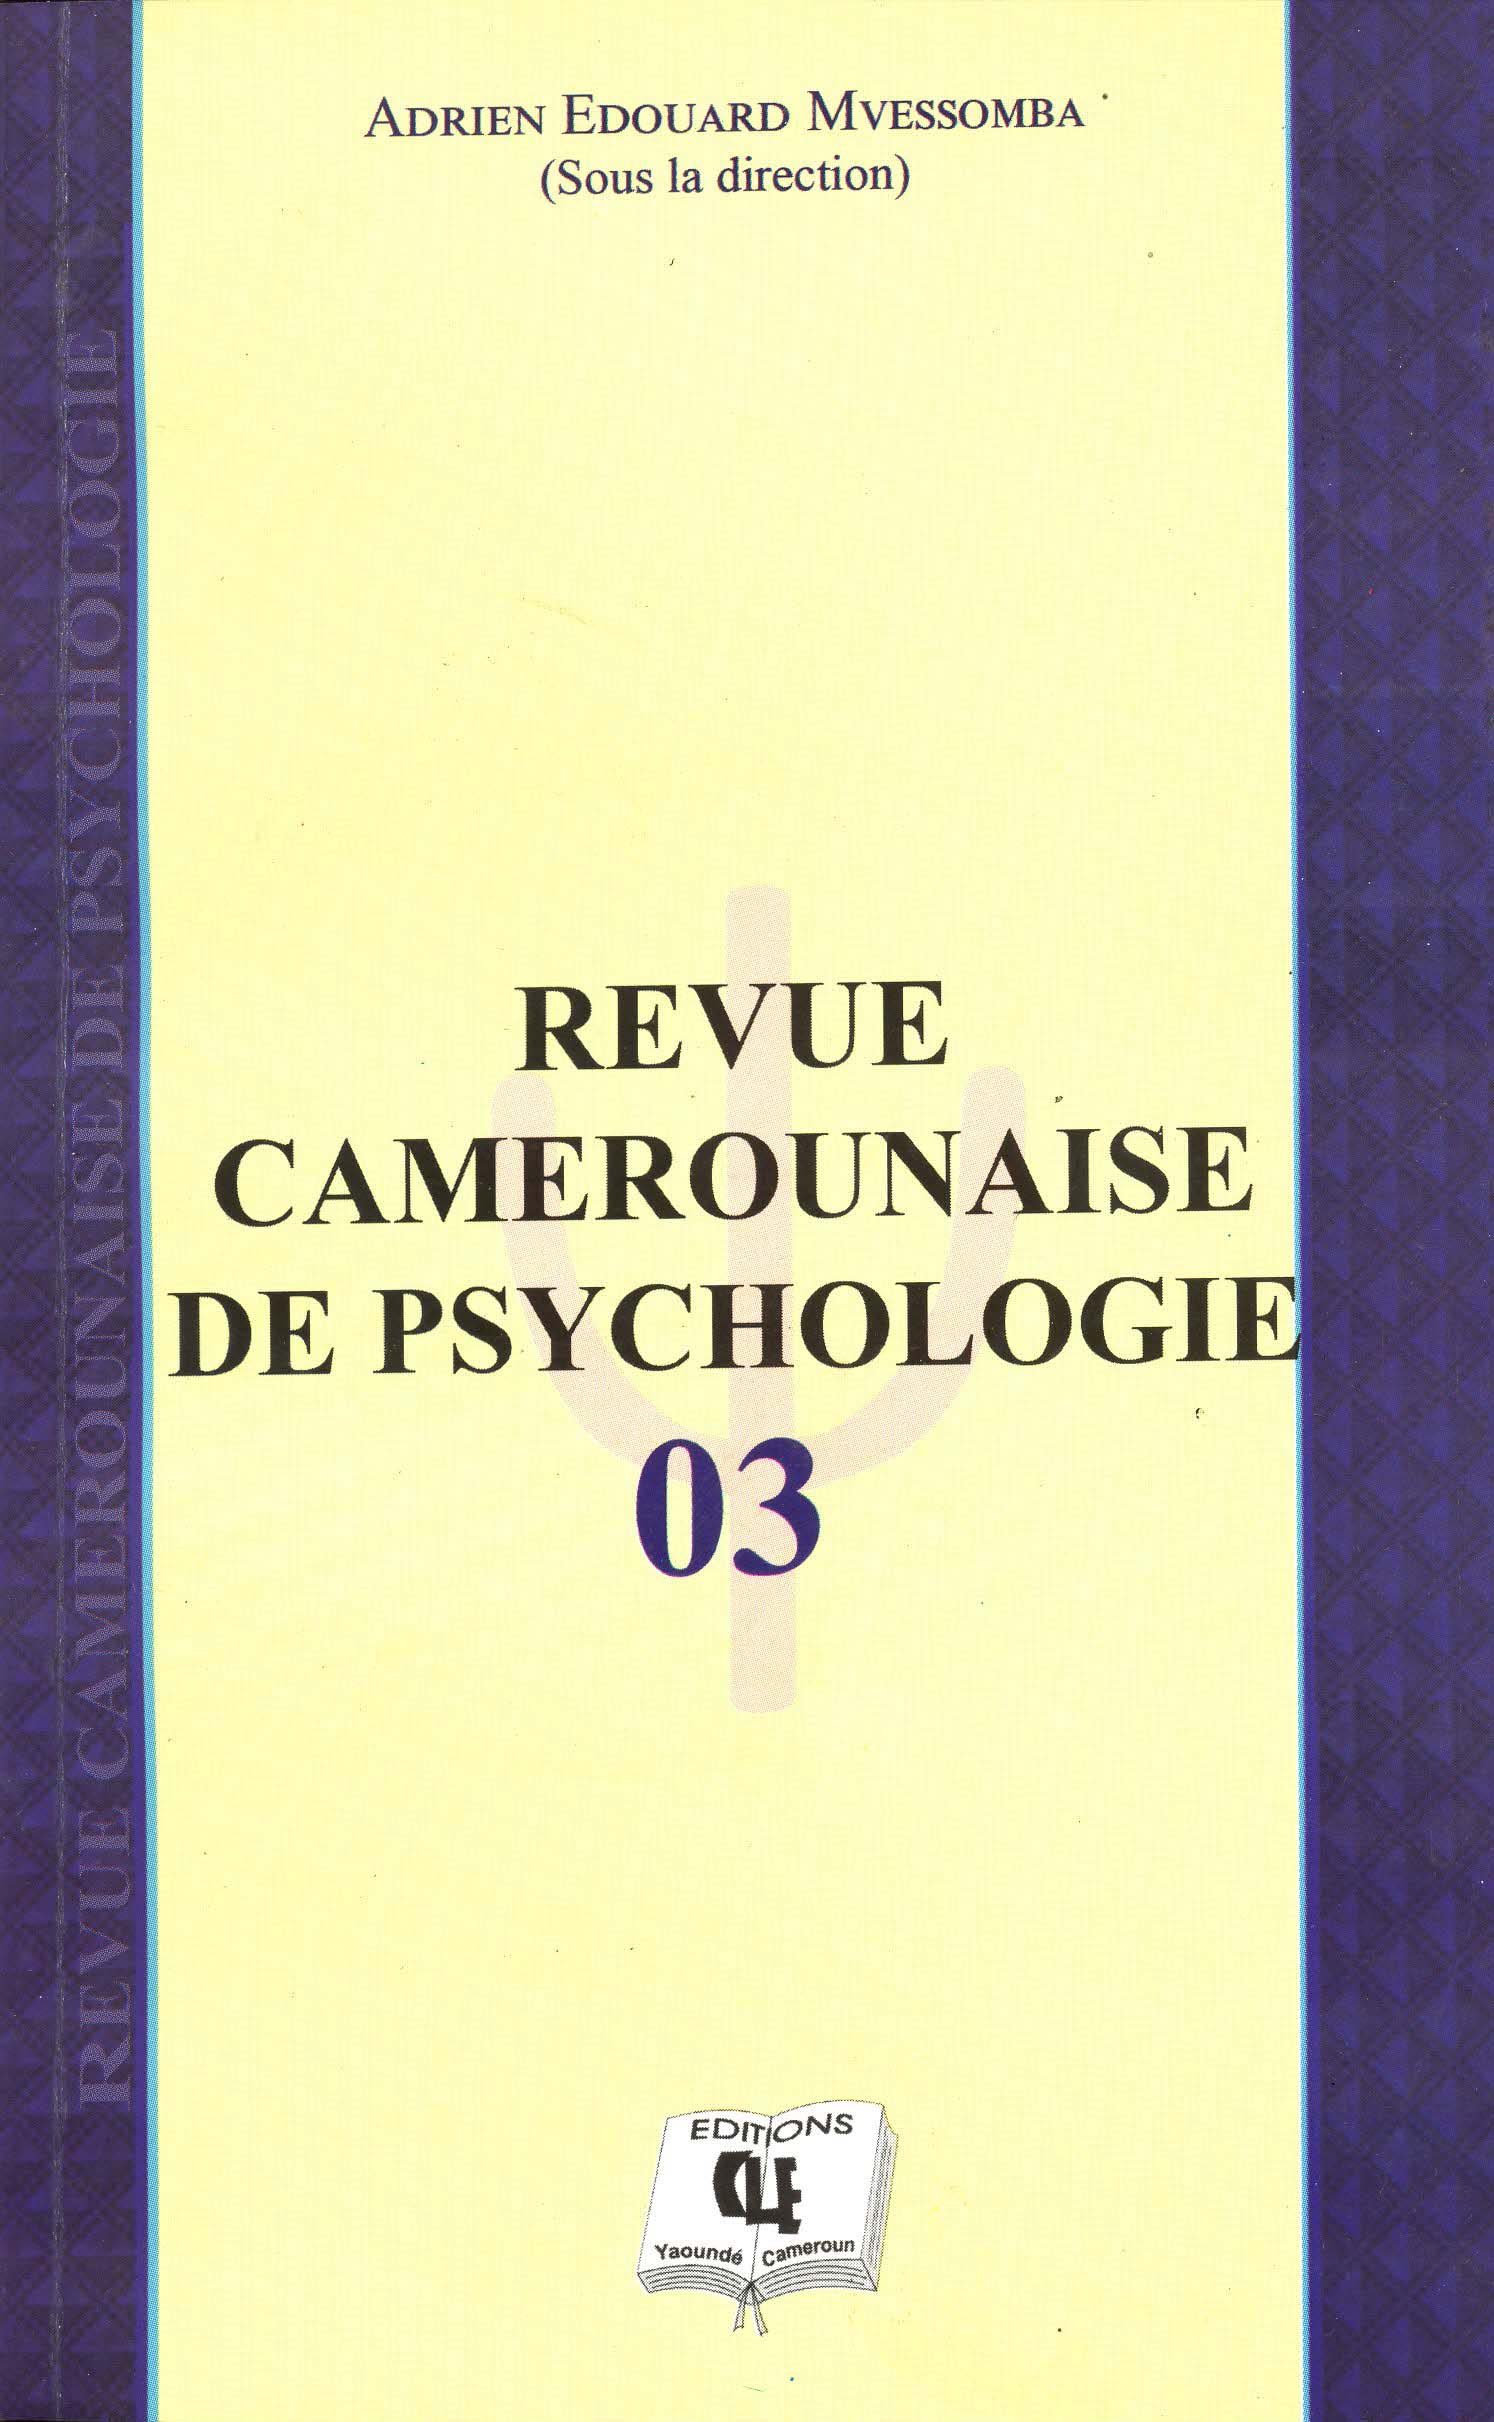 Revue camerounaise de psychologie 03